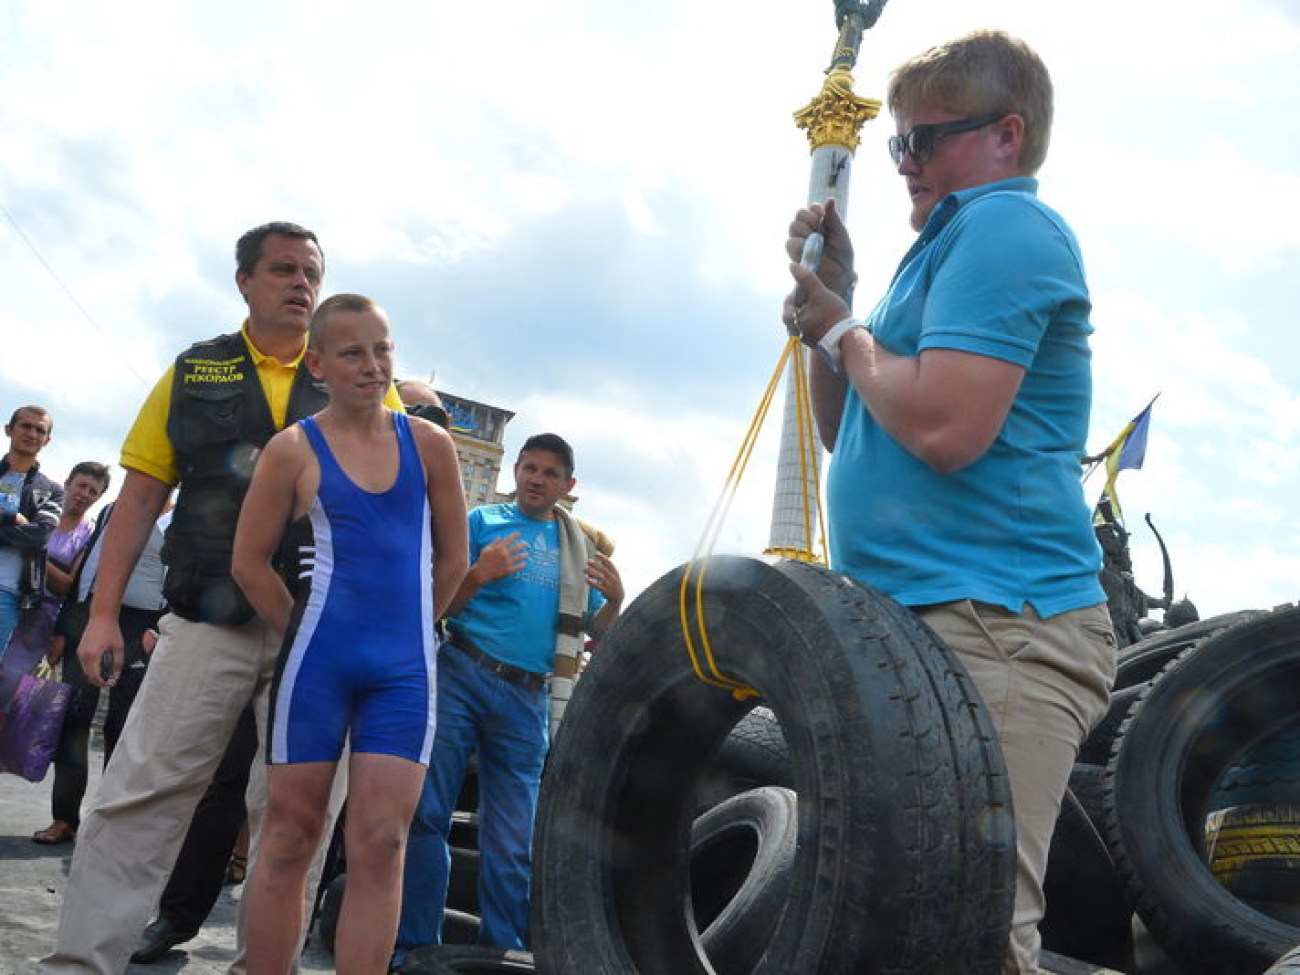 Автомобильная покрышка в новой ипостаси: школьник установил рекорд Украины, 24 июня 2014г.